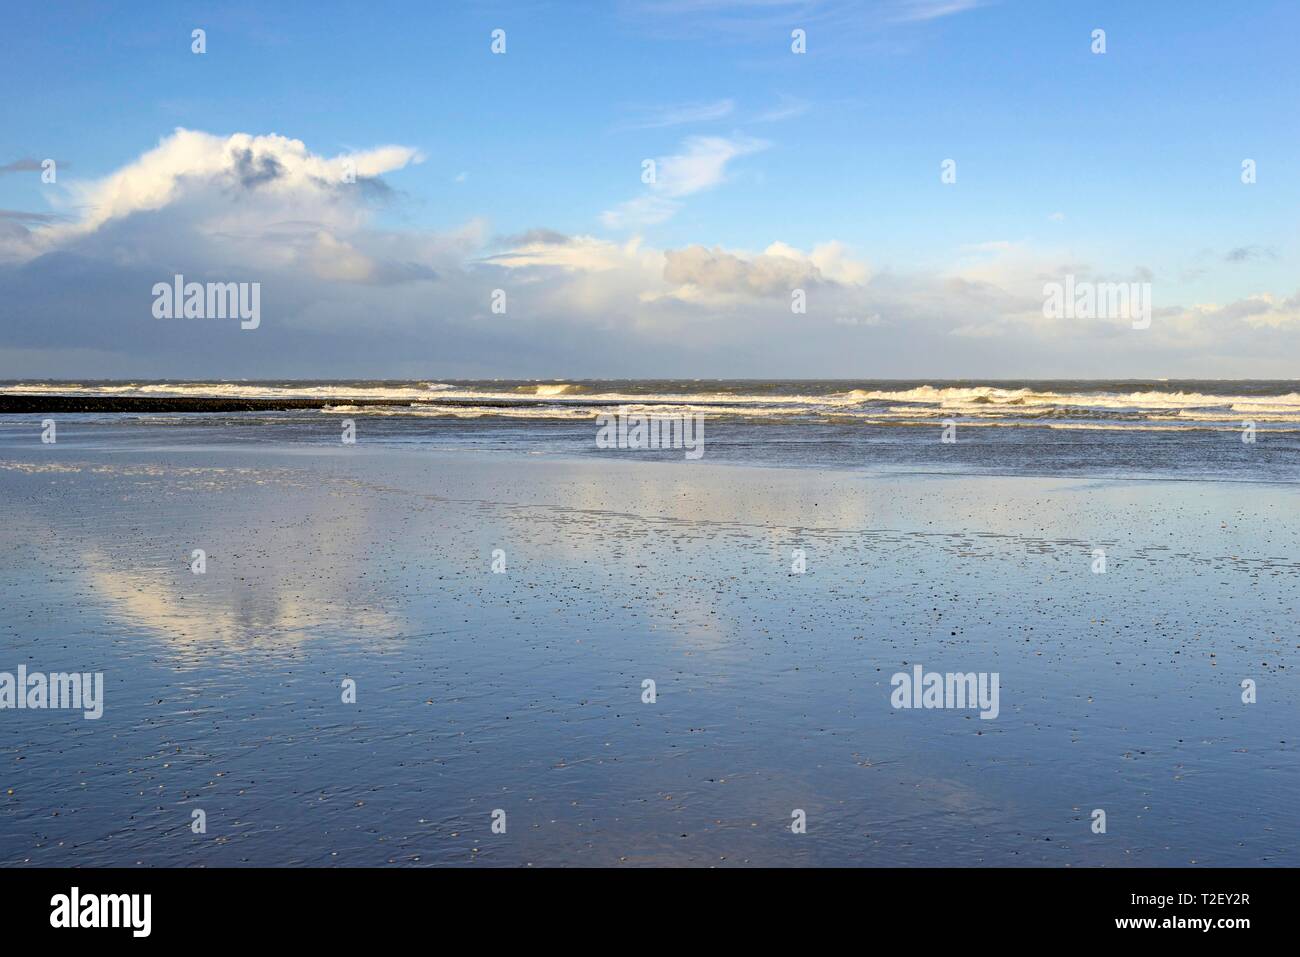 Plage du Nord à marée basse, ciel nuageux reflétée dans le sable humide, Mer du Nord, Norderney, îles de la Frise orientale, Basse-Saxe, Allemagne Banque D'Images